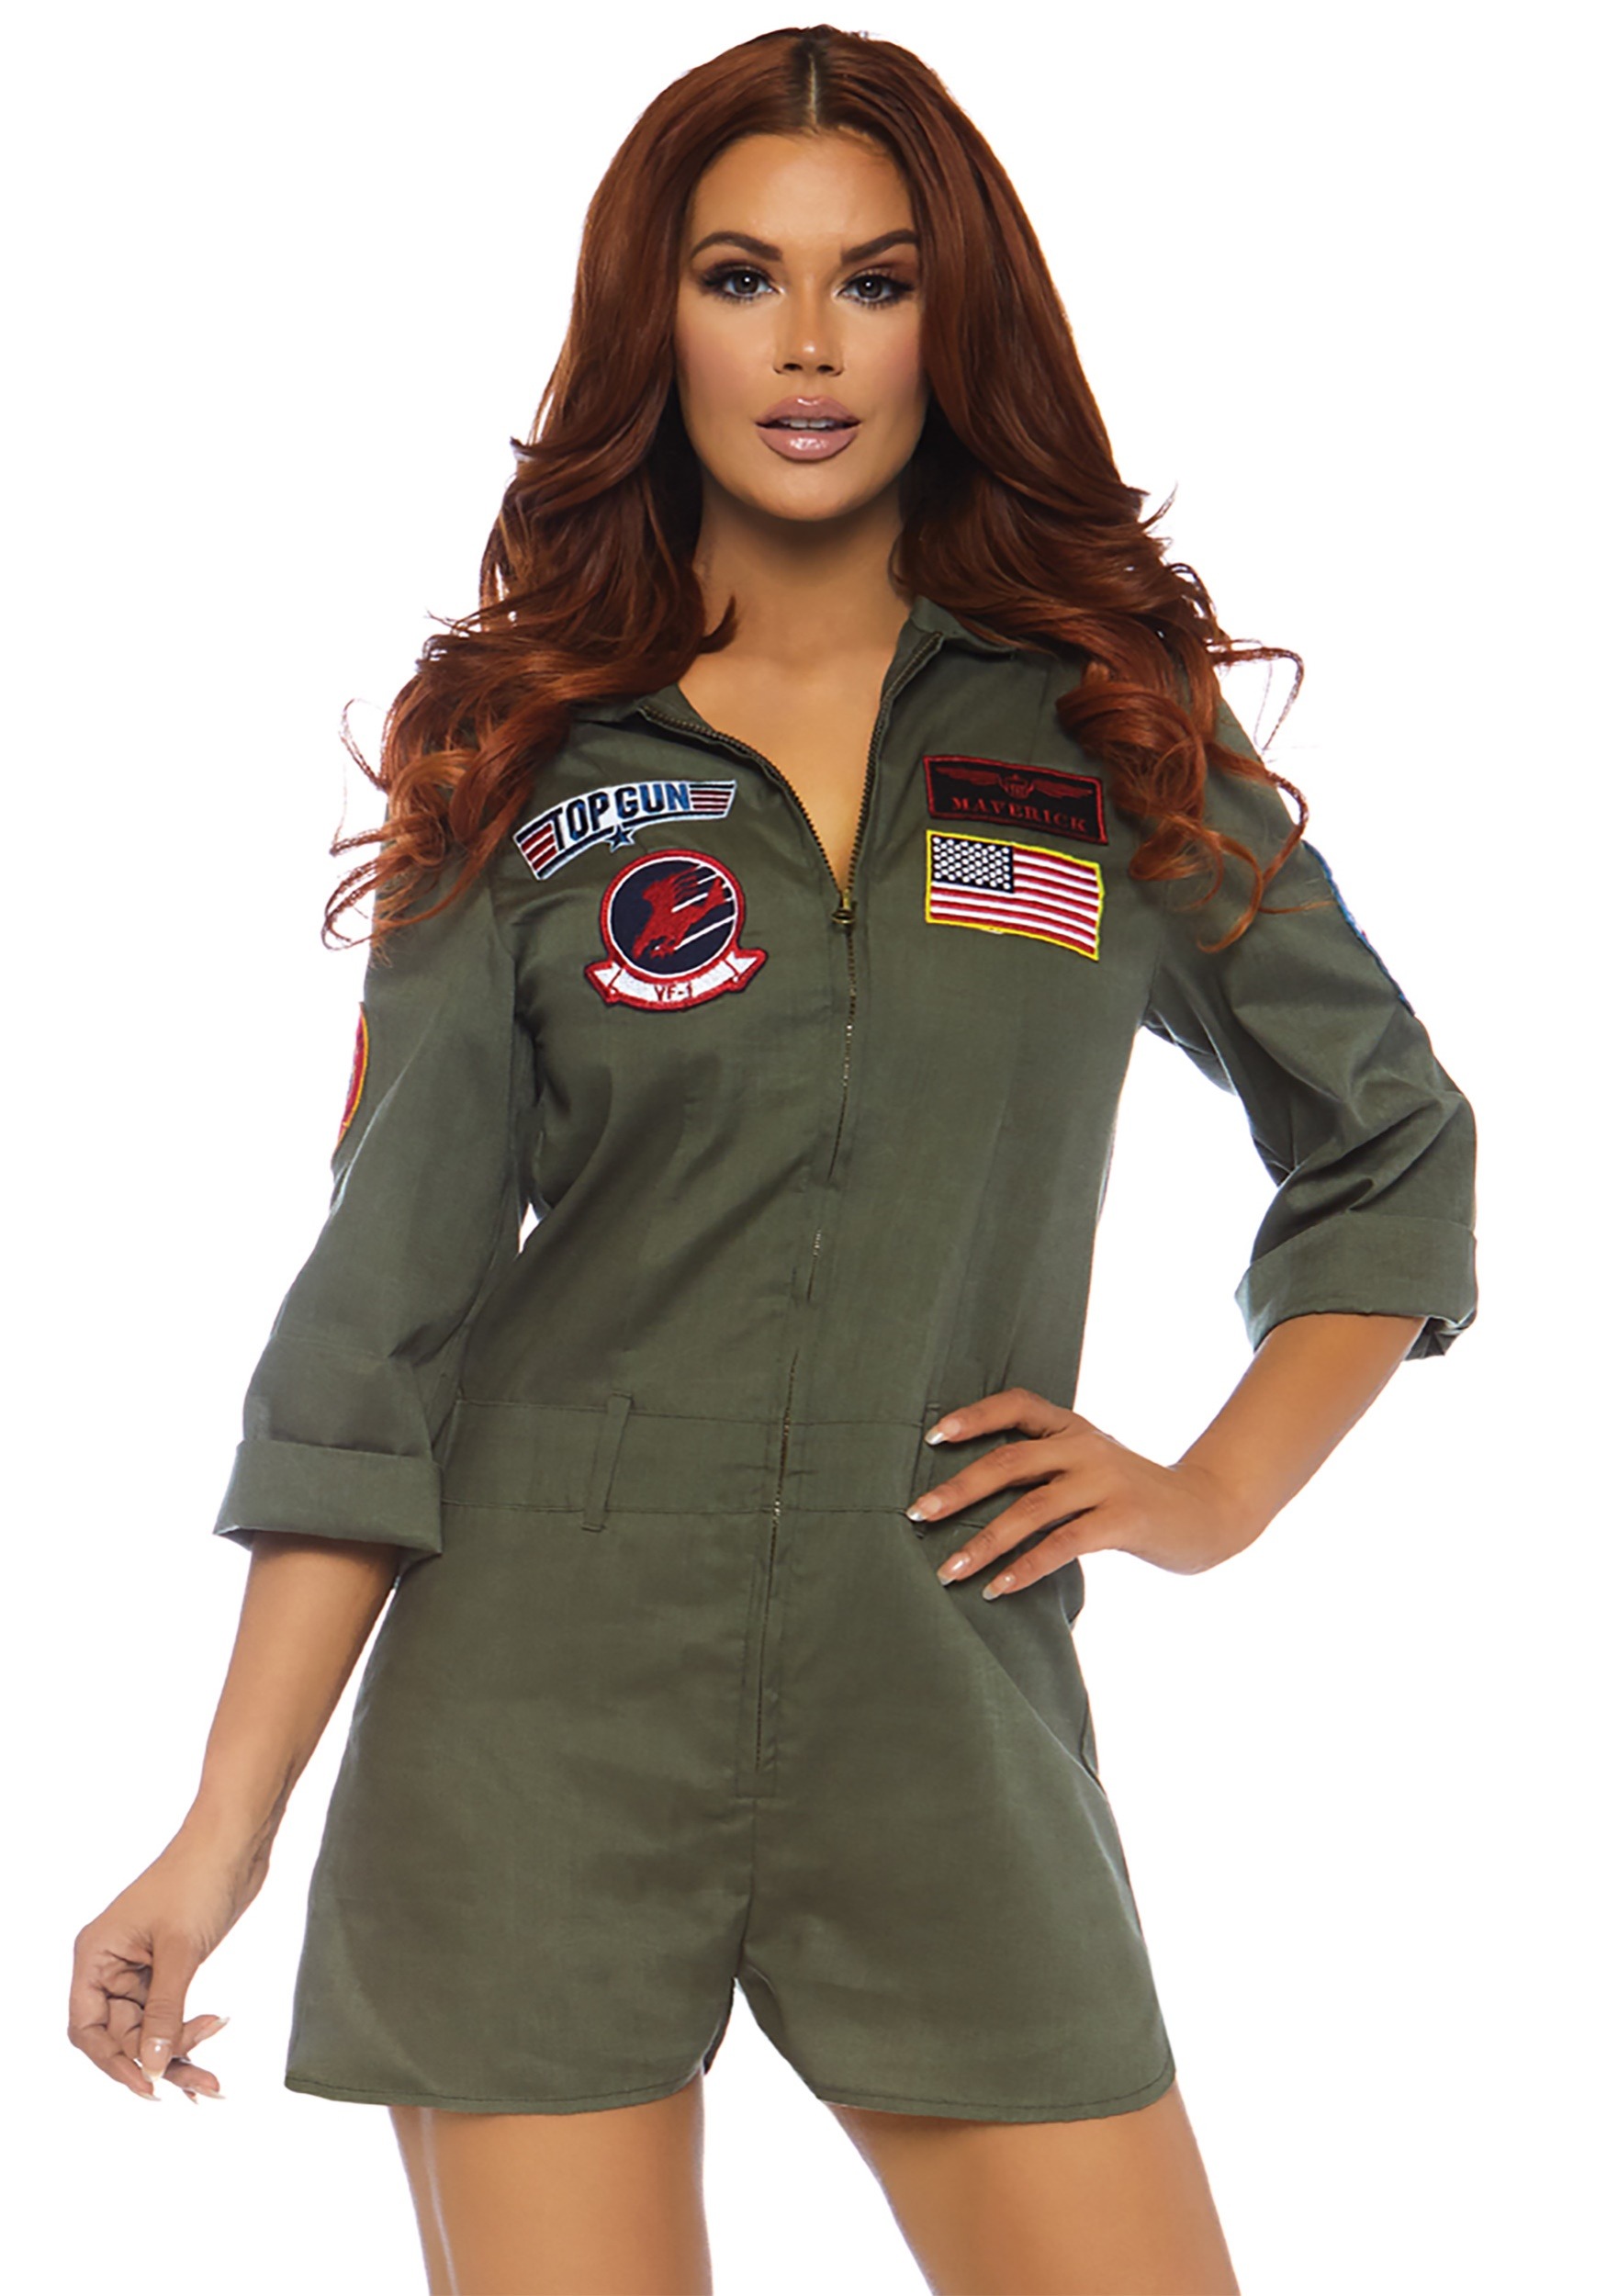 Top Gun Women’s Flight Suit Romper Costume